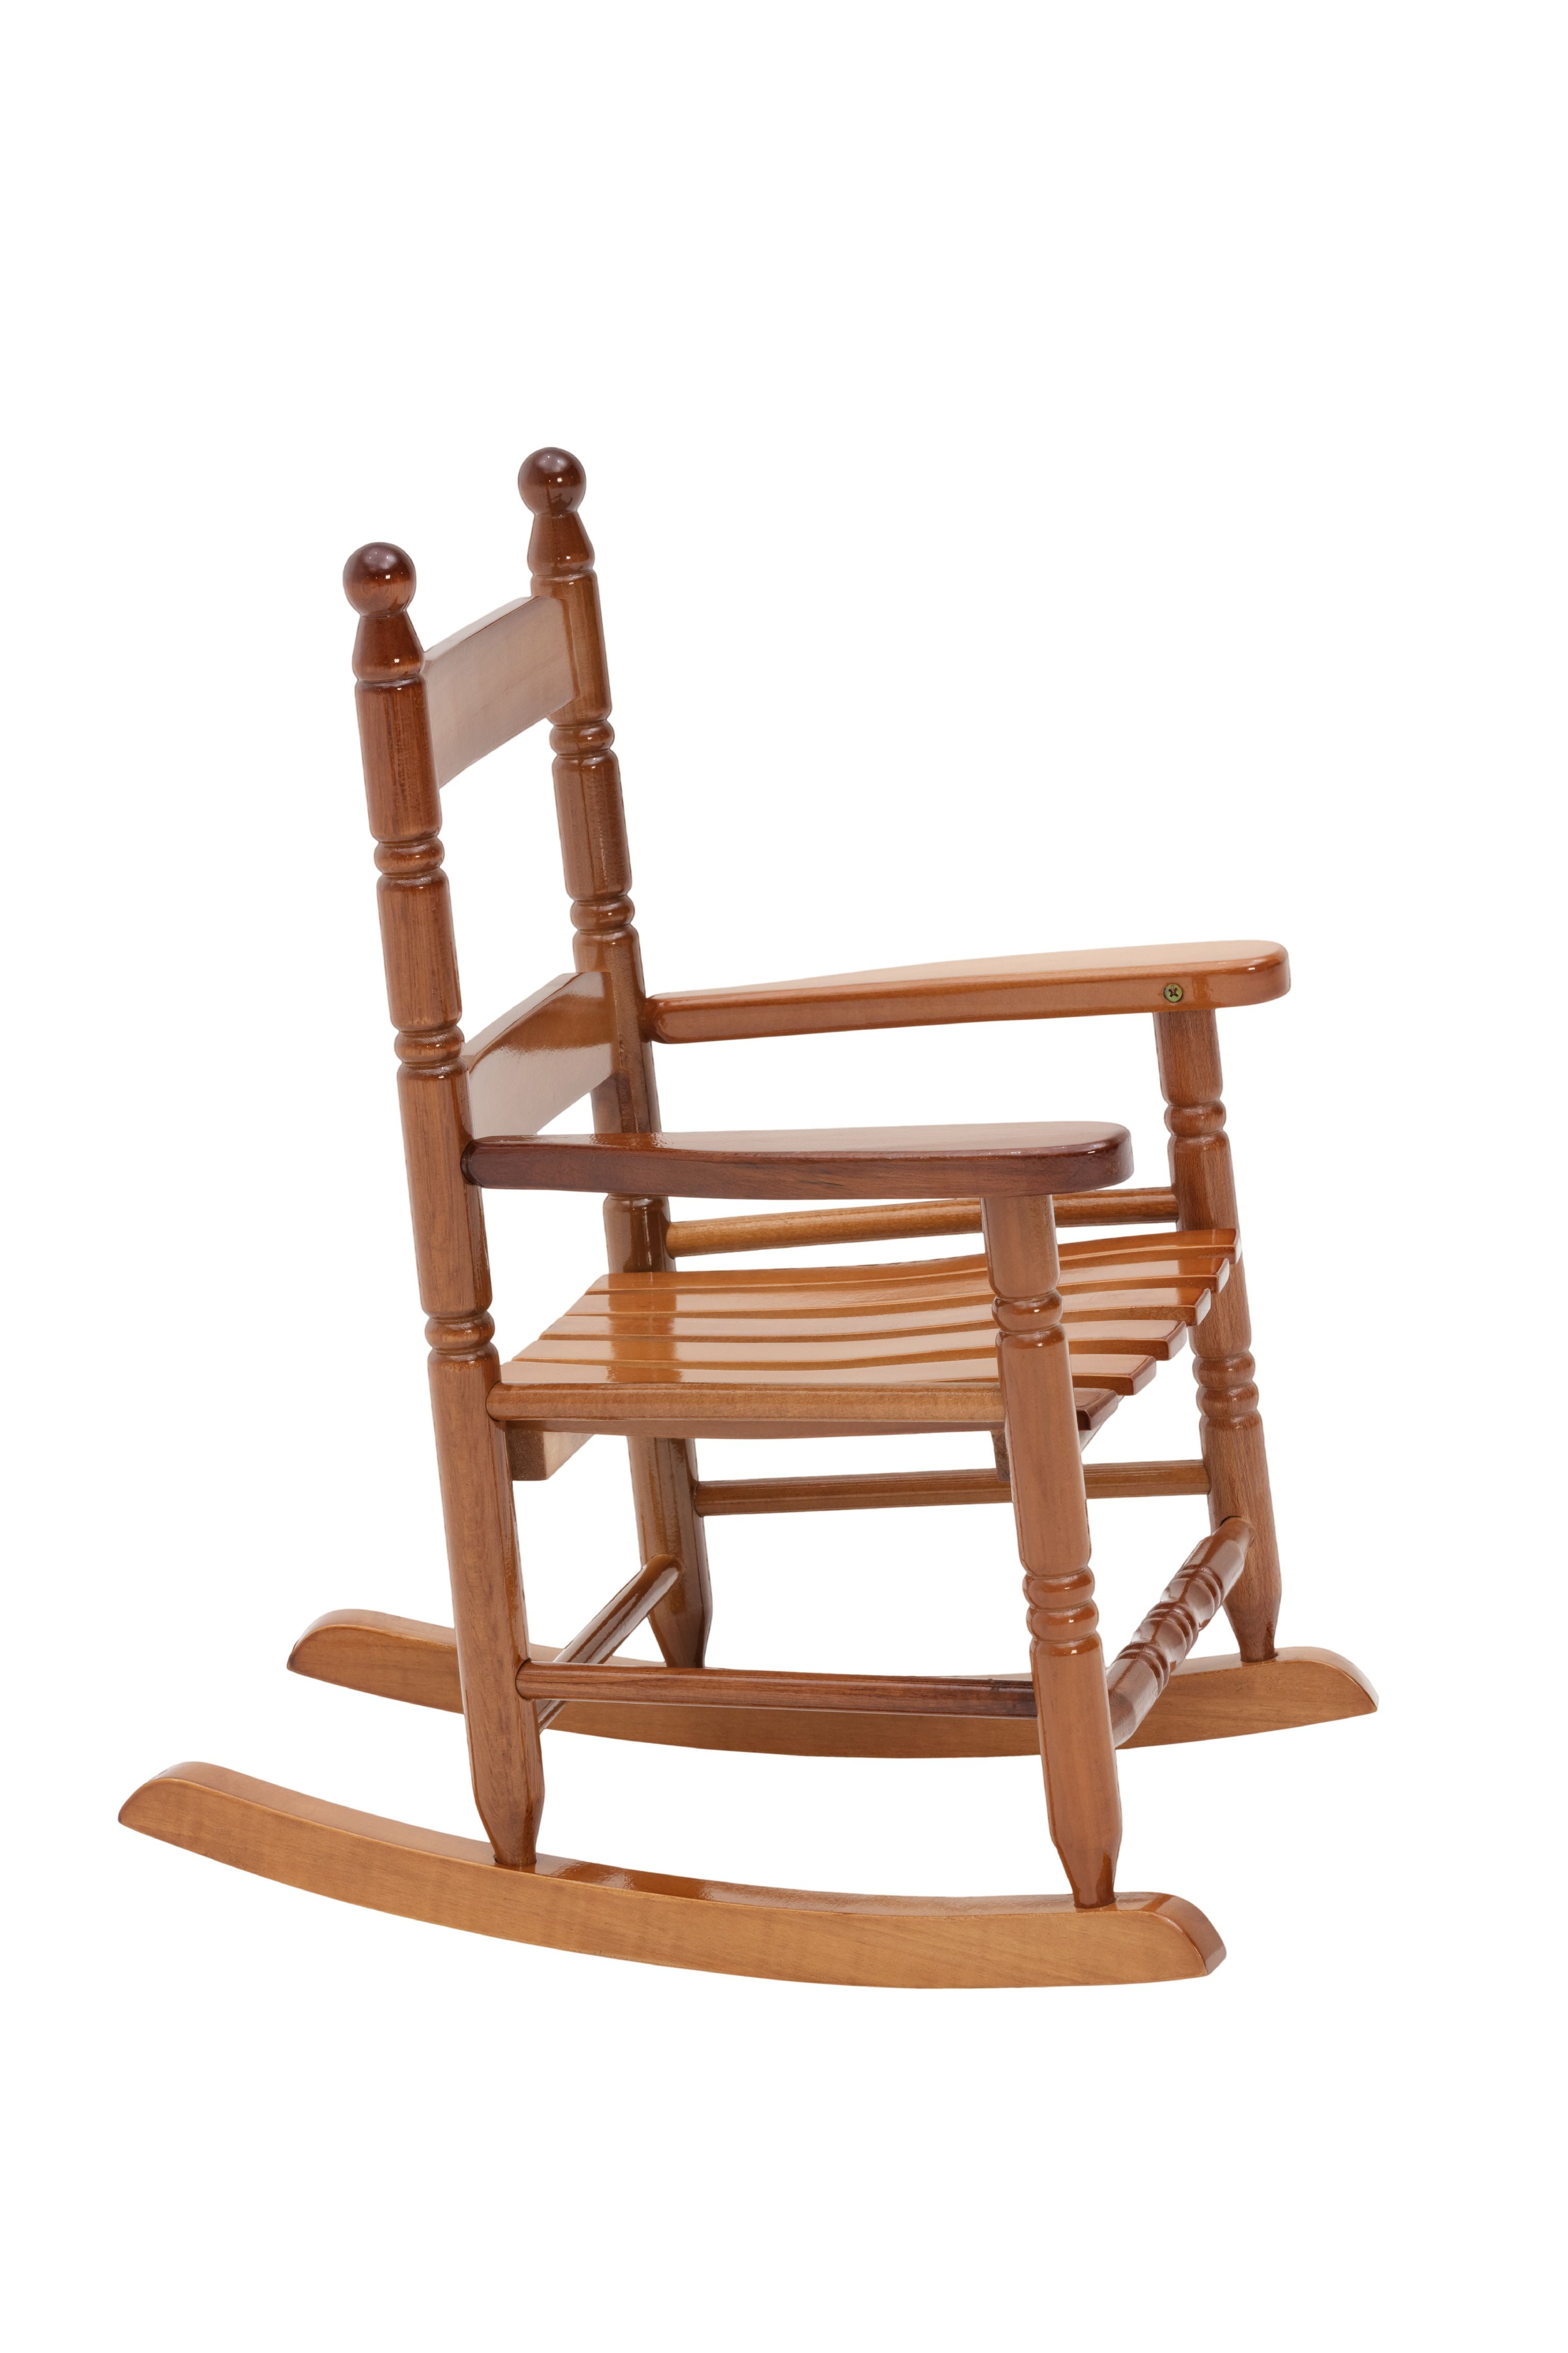 jack post children's rocking chair